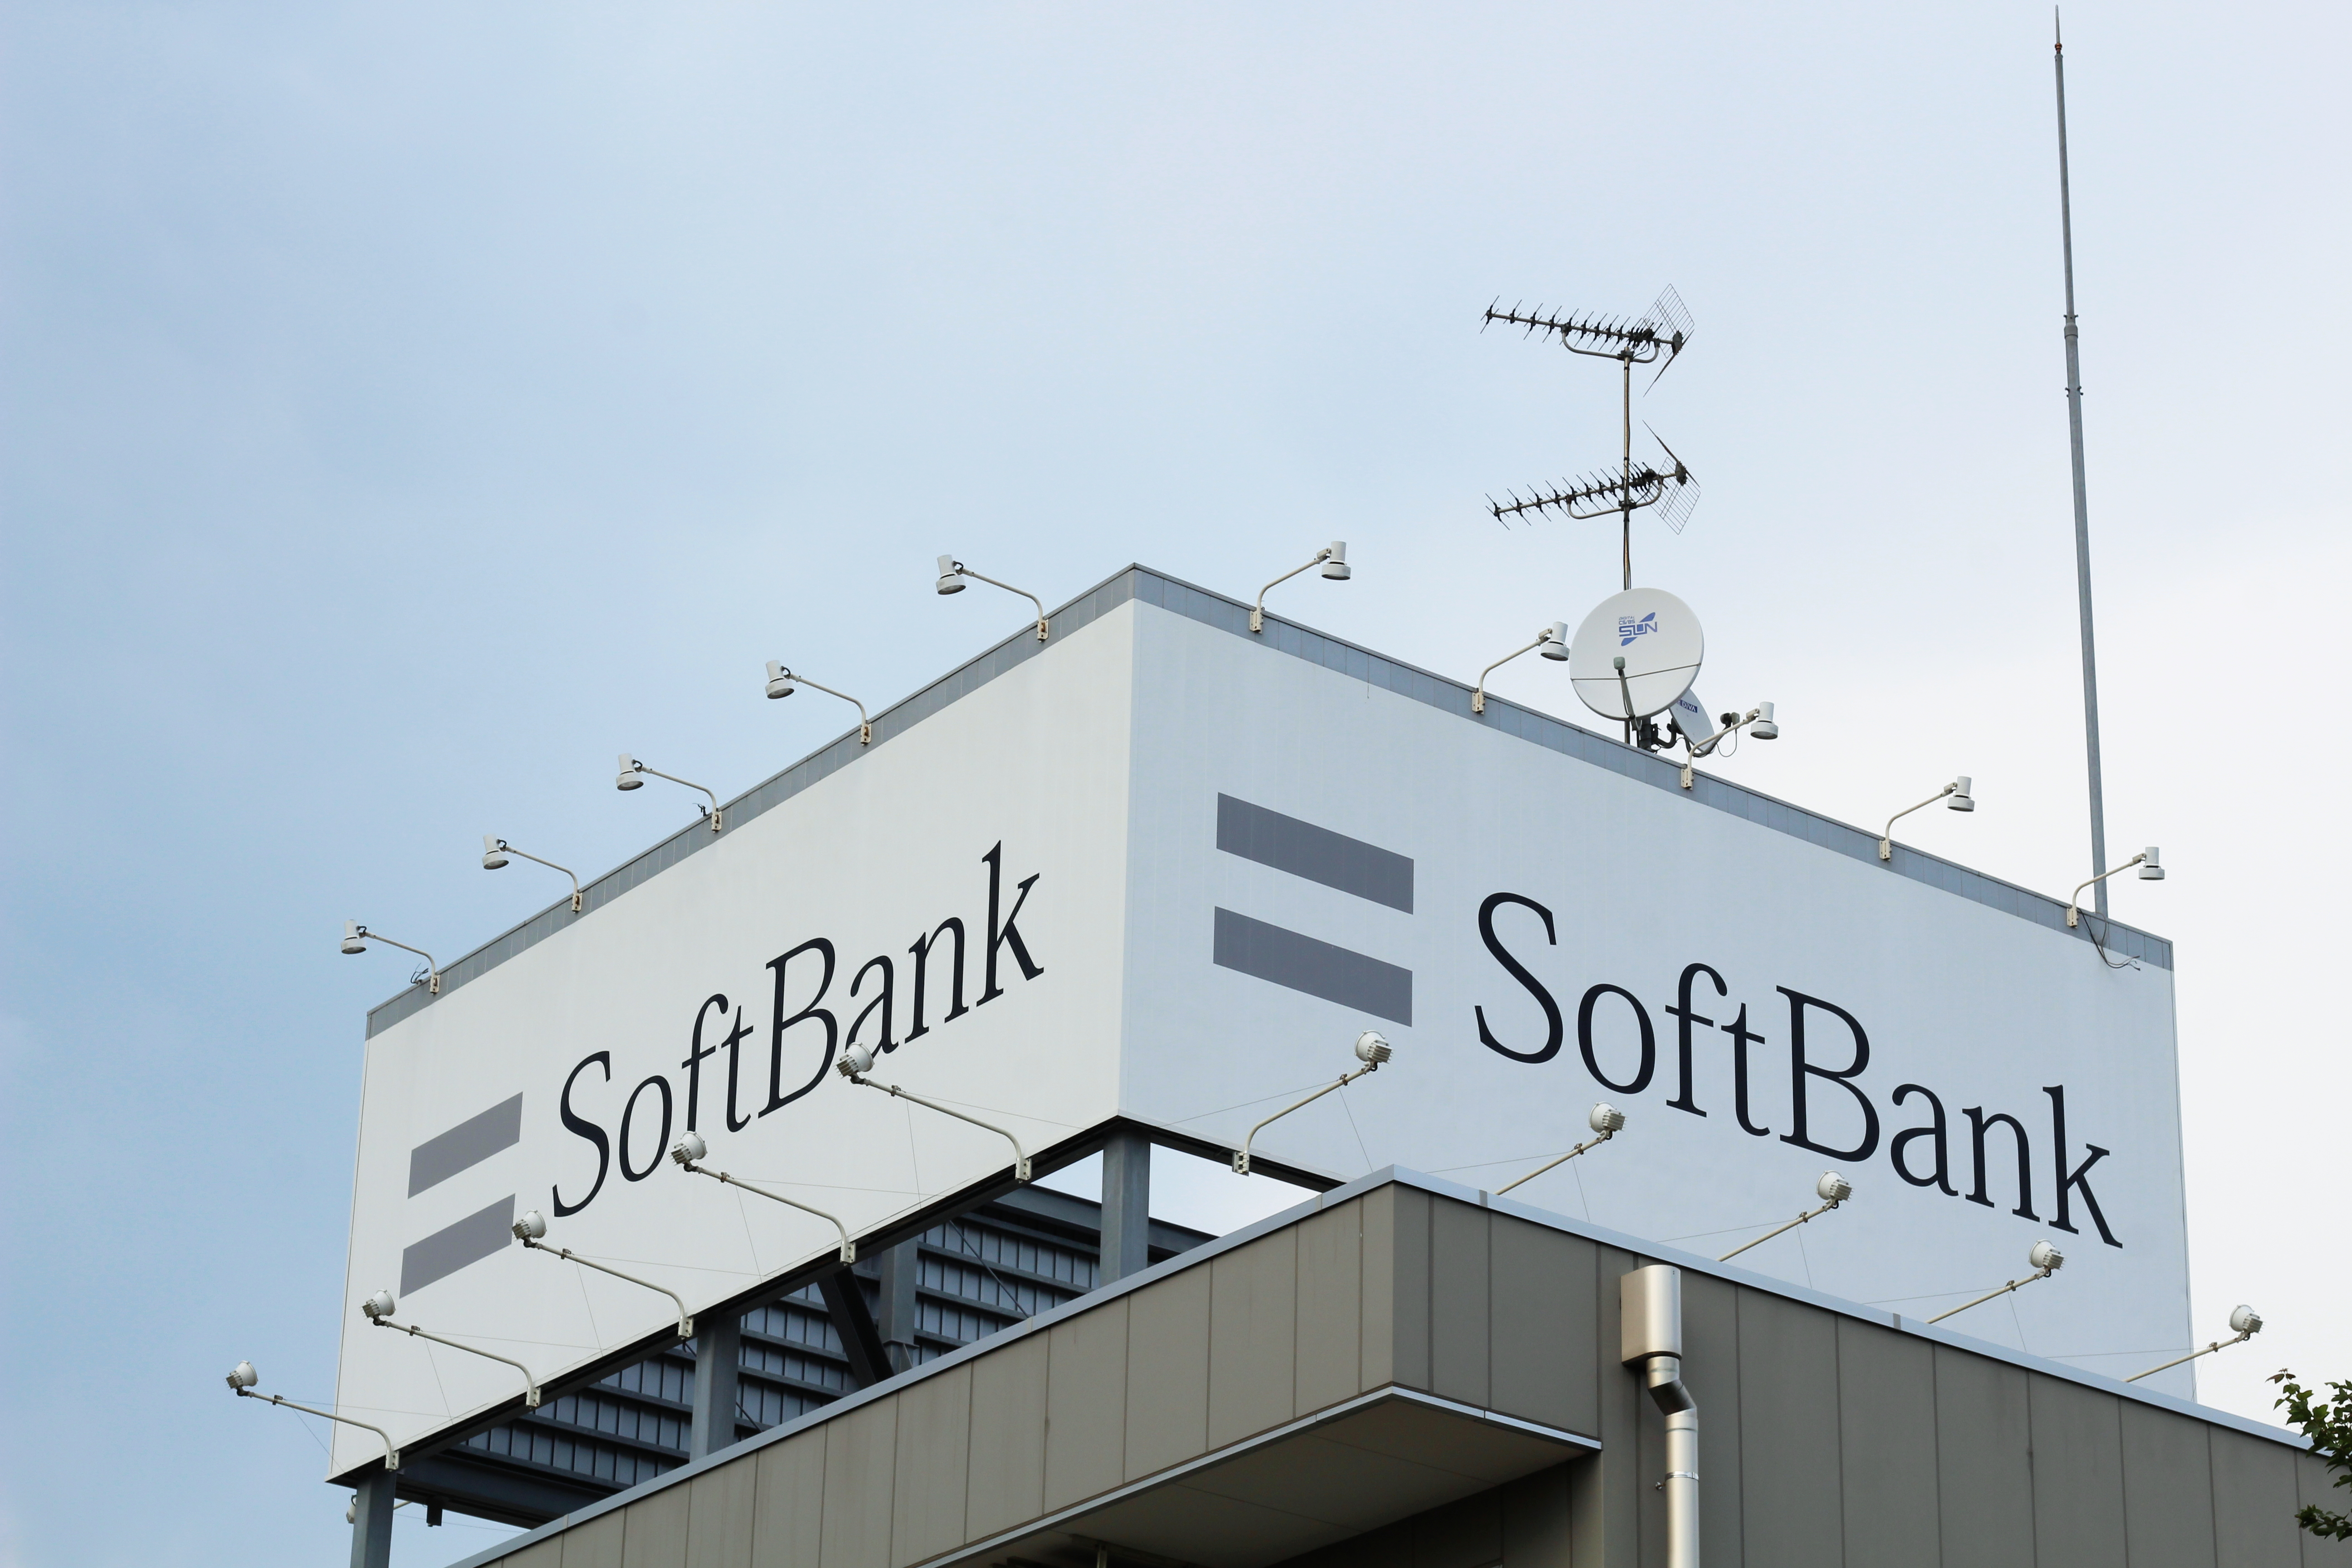 日本、千葉 - 2018年8月29日：千葉市稲毛区にある日本の通信会社ソフトバンクの支店の屋根に貼られた広告。